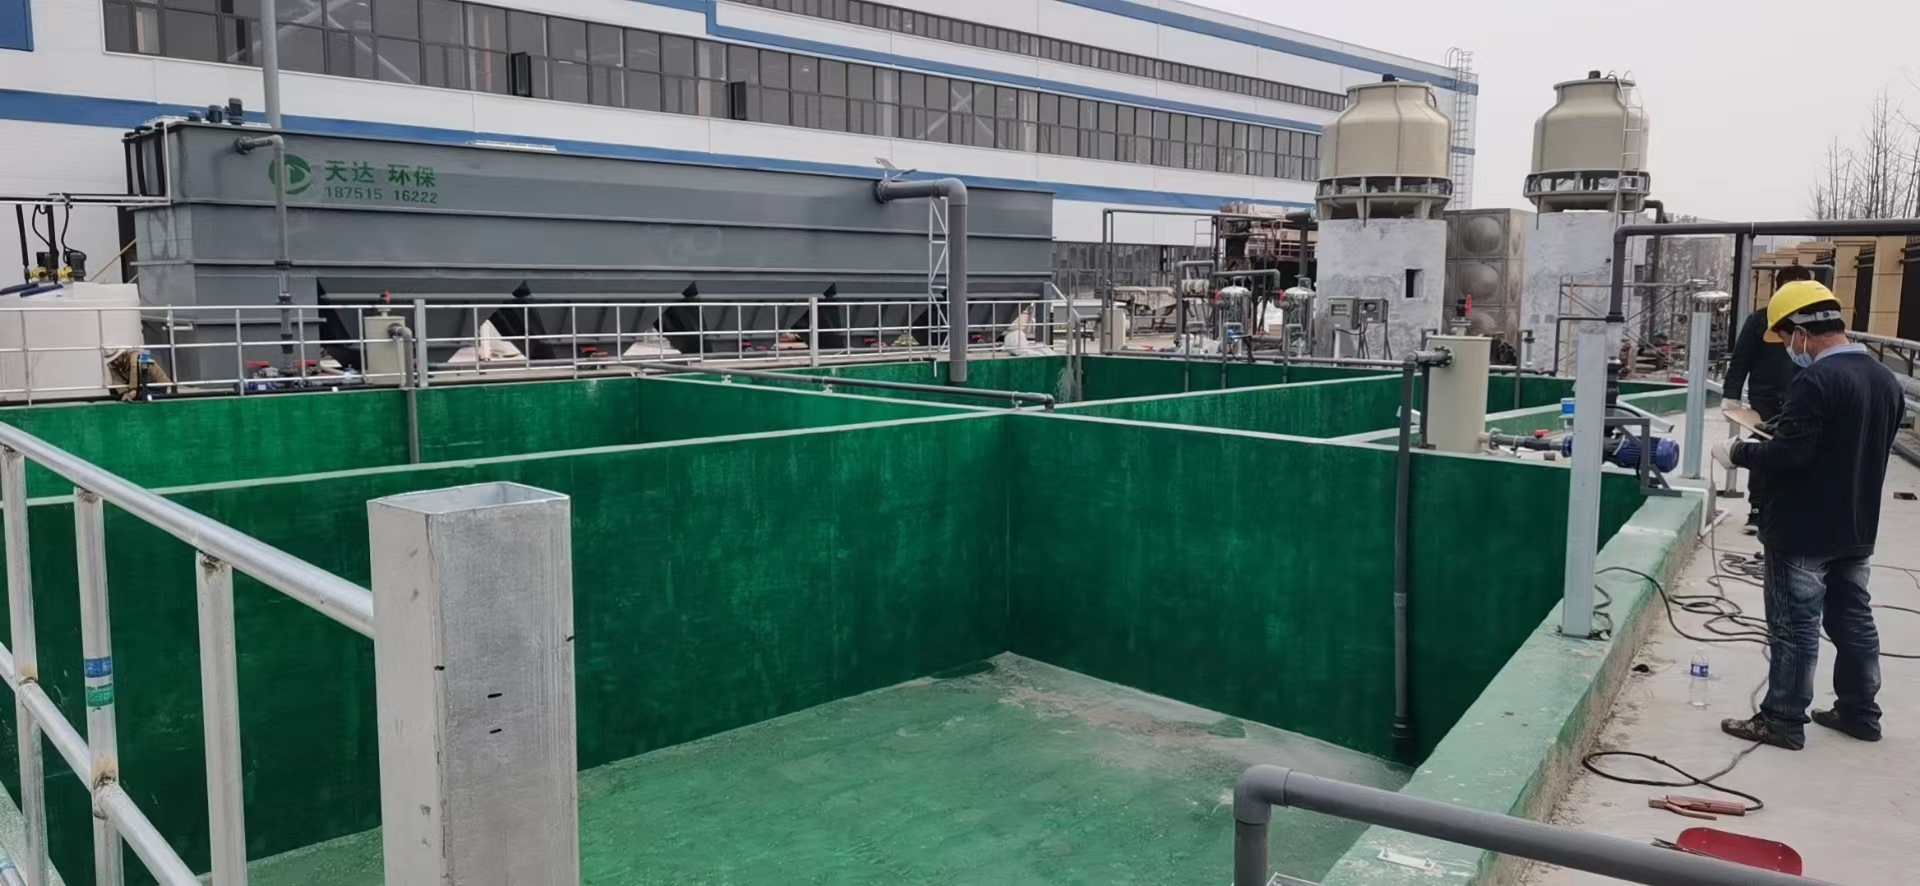 天達環保1200噸廢水處理項目順利通過竣工驗收